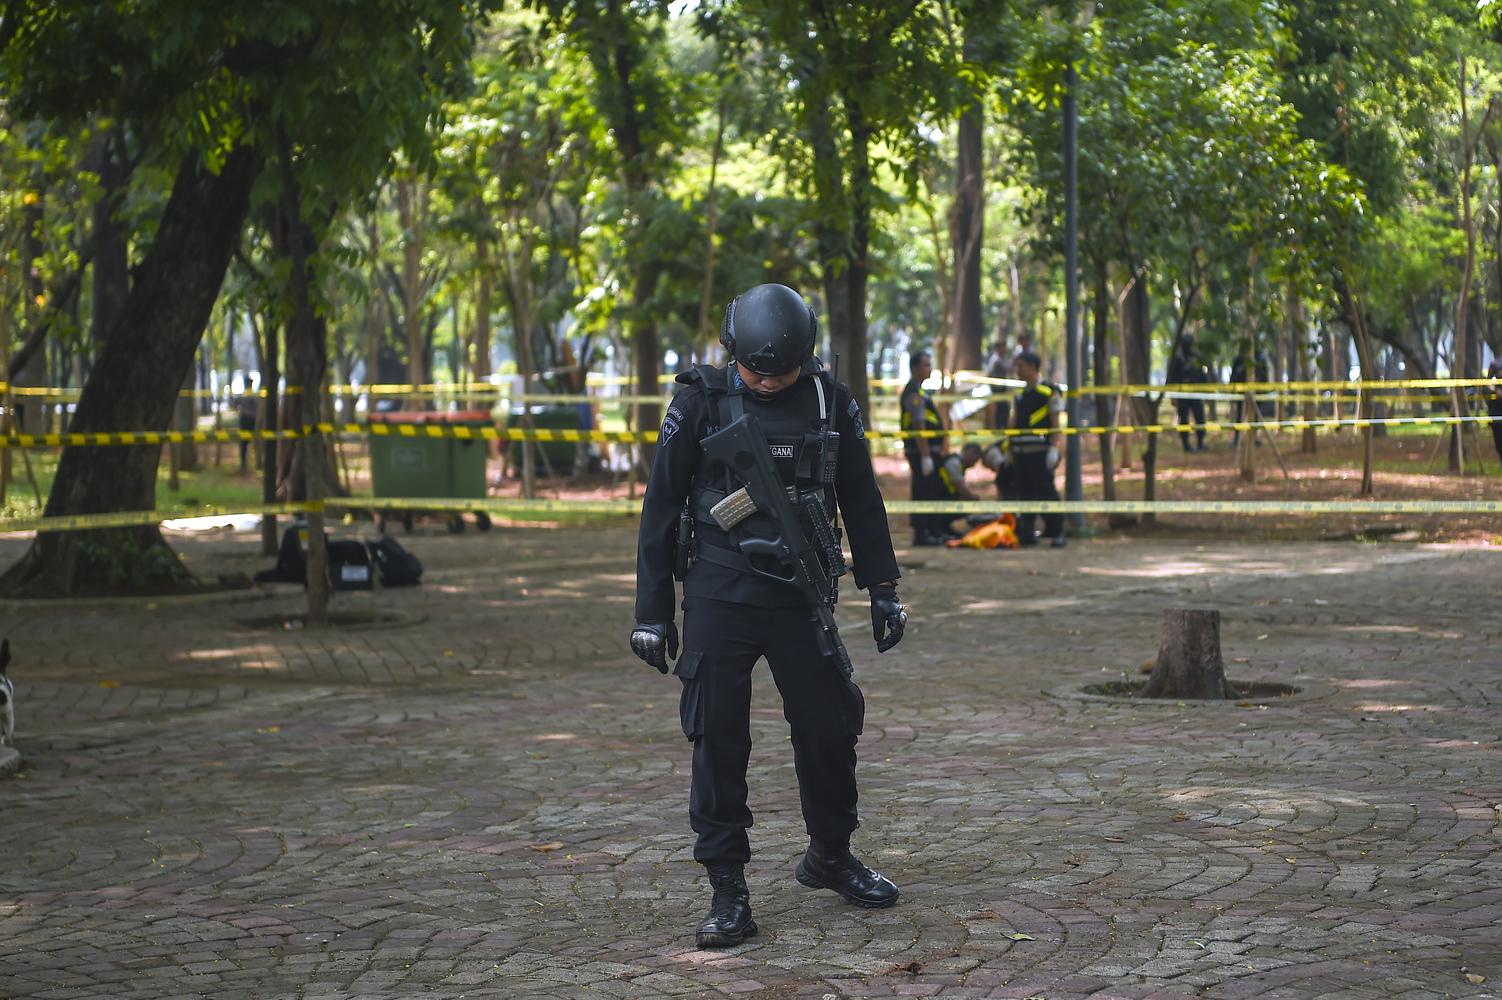 Anggota Gegana Brimob Polri berjaga di sekitar TKP ledakan di kawasan Monas, Jakarta, Selasa (3/12/2019). Menurut Kapolda Metro Jaya Irjen Gatot Edy menuturkan, ledakan tersebut berasal dari granat asap. Saat ini kepolisian masih mendalami asal granat tersebut.

